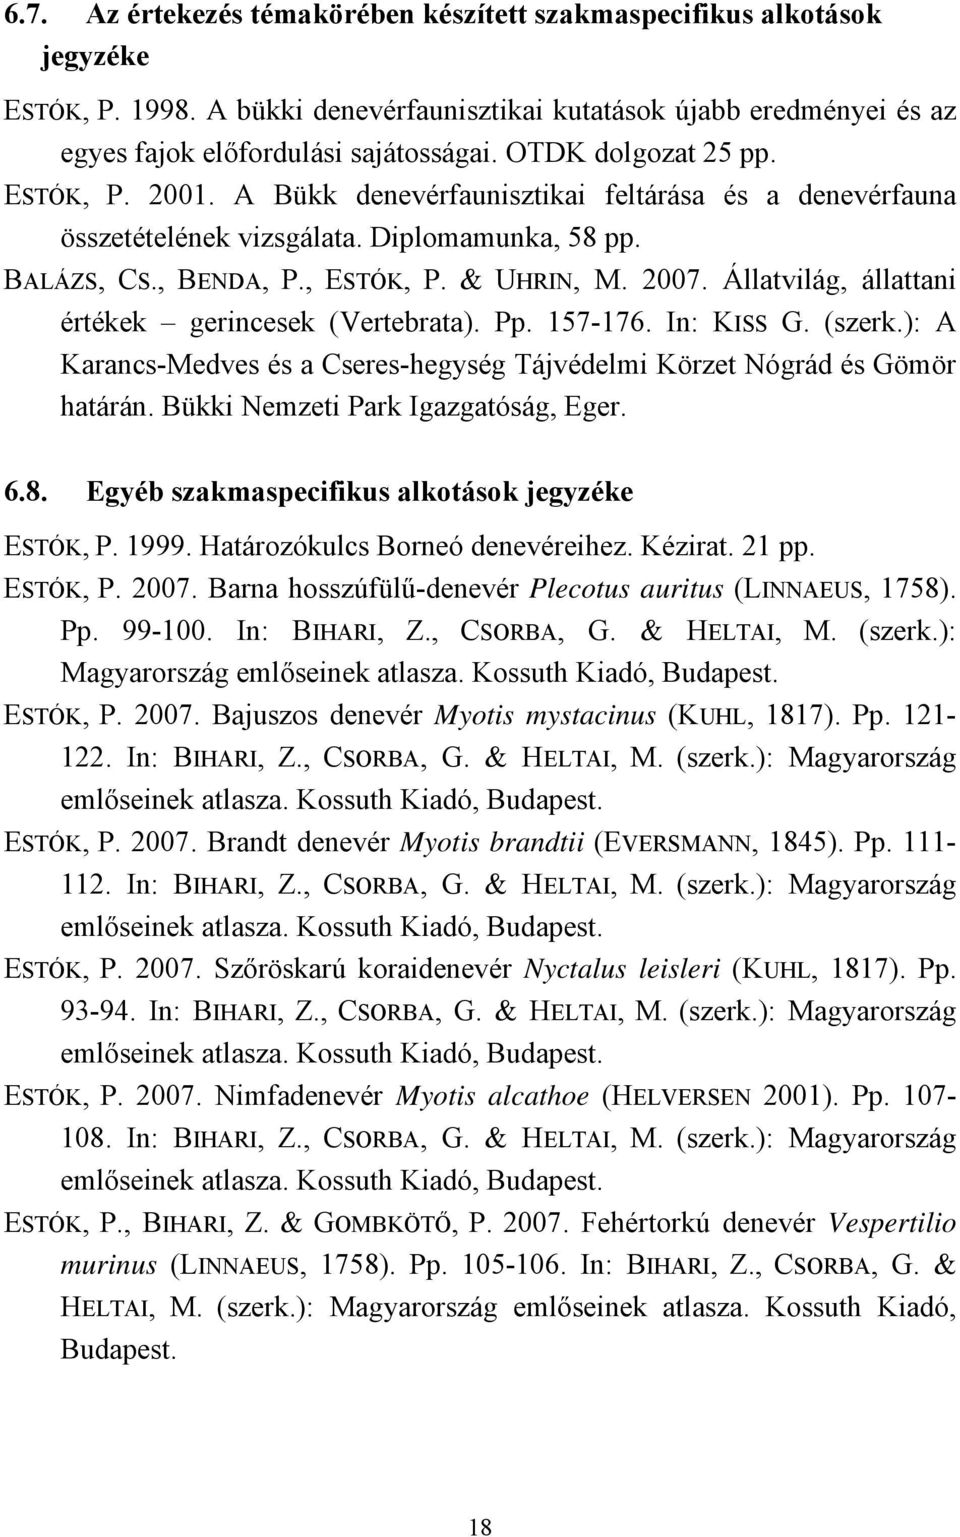 Állatvilág, állattani értékek gerincesek (Vertebrata). Pp. 157-176. In: KISS G. (szerk.): A Karancs-Medves és a Cseres-hegység Tájvédelmi Körzet Nógrád és Gömör határán.